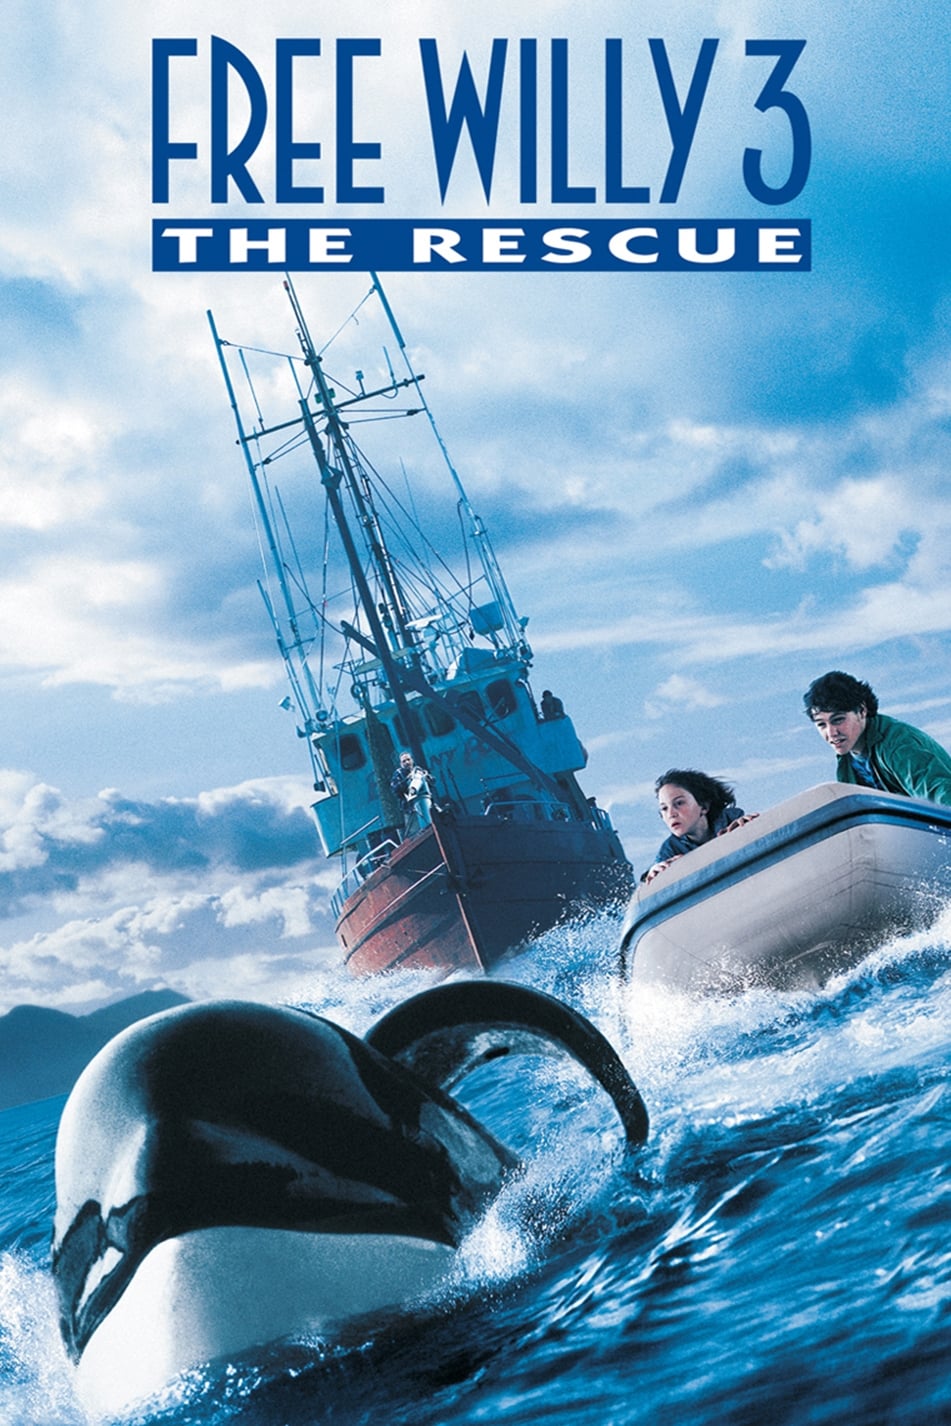 Liberad a Willy 3: El rescate (1997)